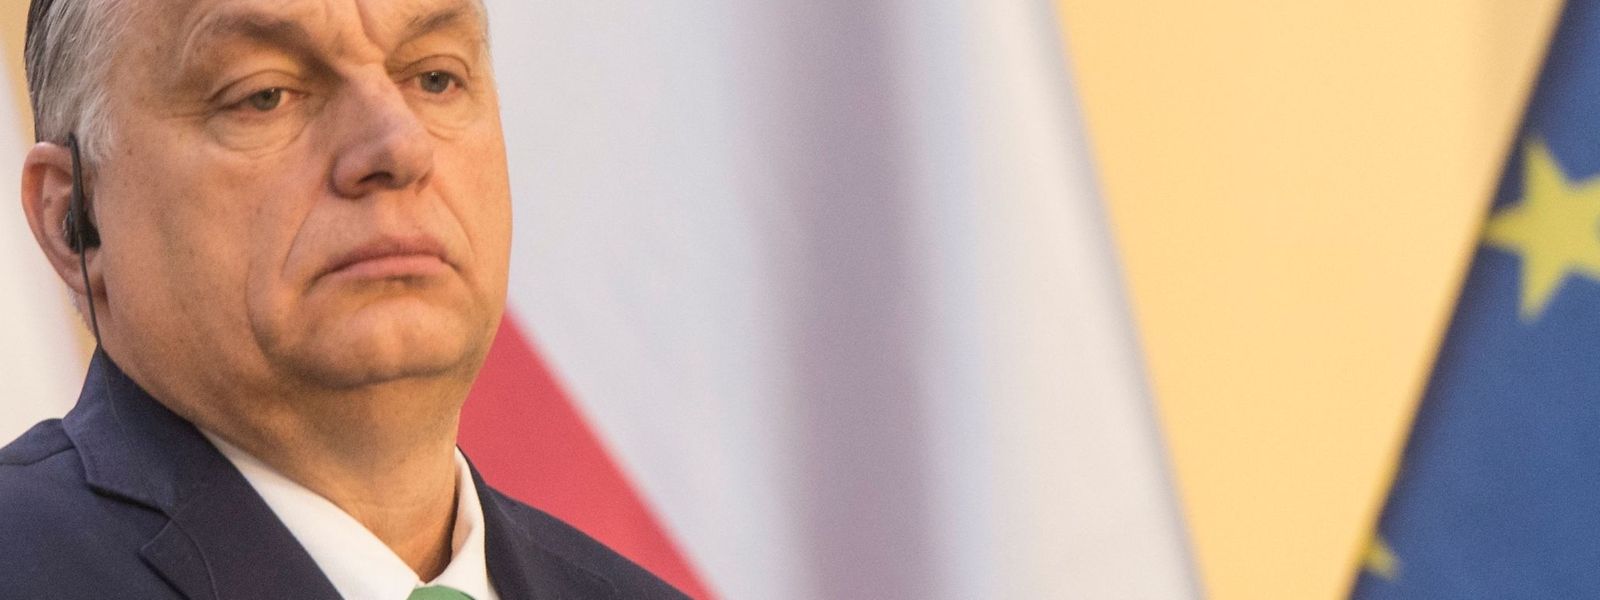 "Autokraten wie Orban darf man keine Ausrede bieten", so Florian Bieber.